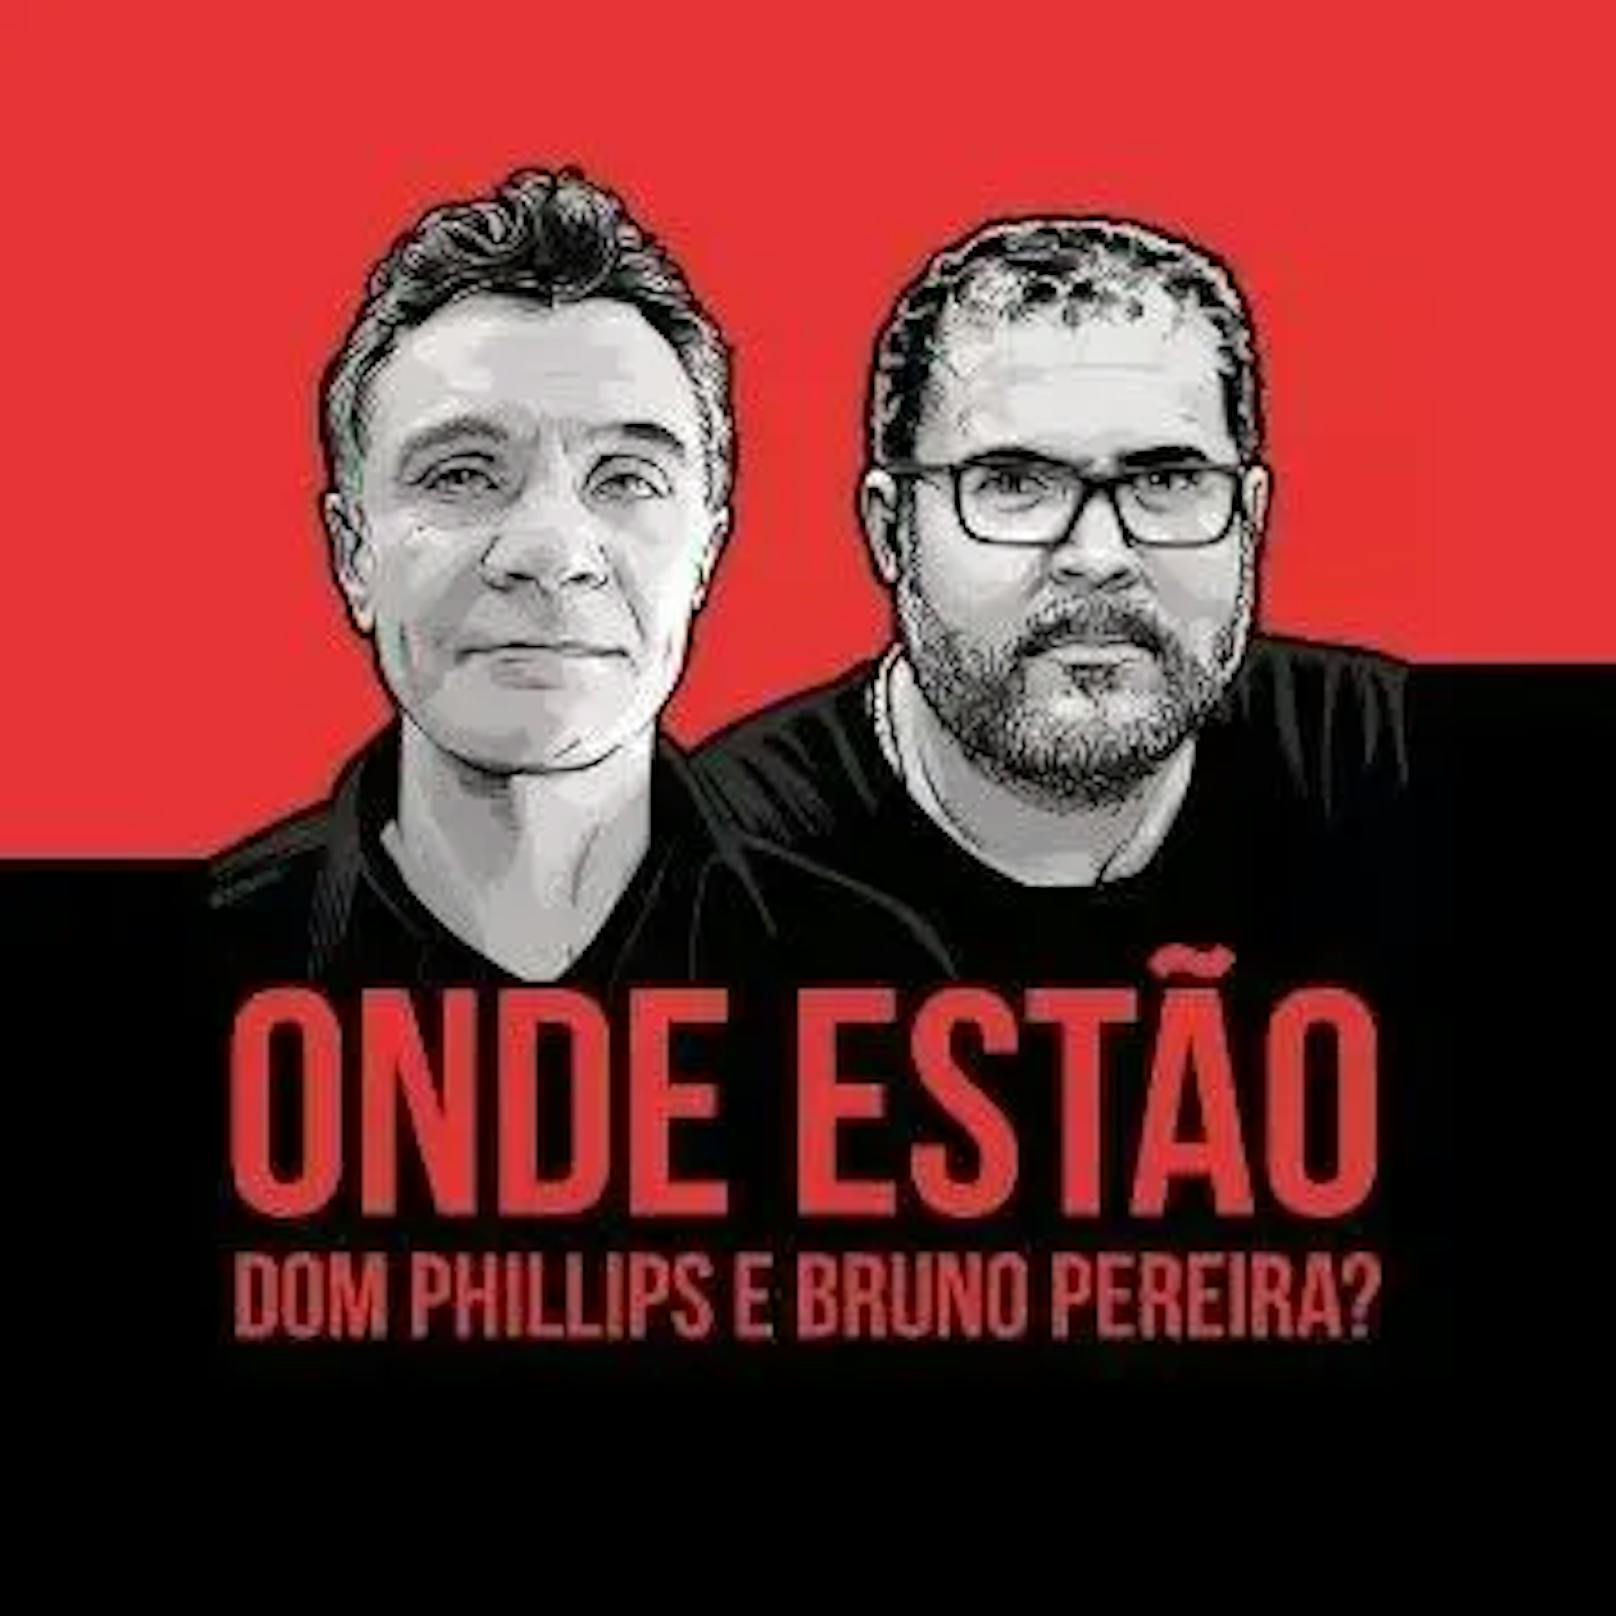 Am 22. Juli hat die brasilianische Generalstaatsanwaltschaft drei Verdächtige wegen der Ermordung von Dom Phillips und Bruno Pereira angeklagt.